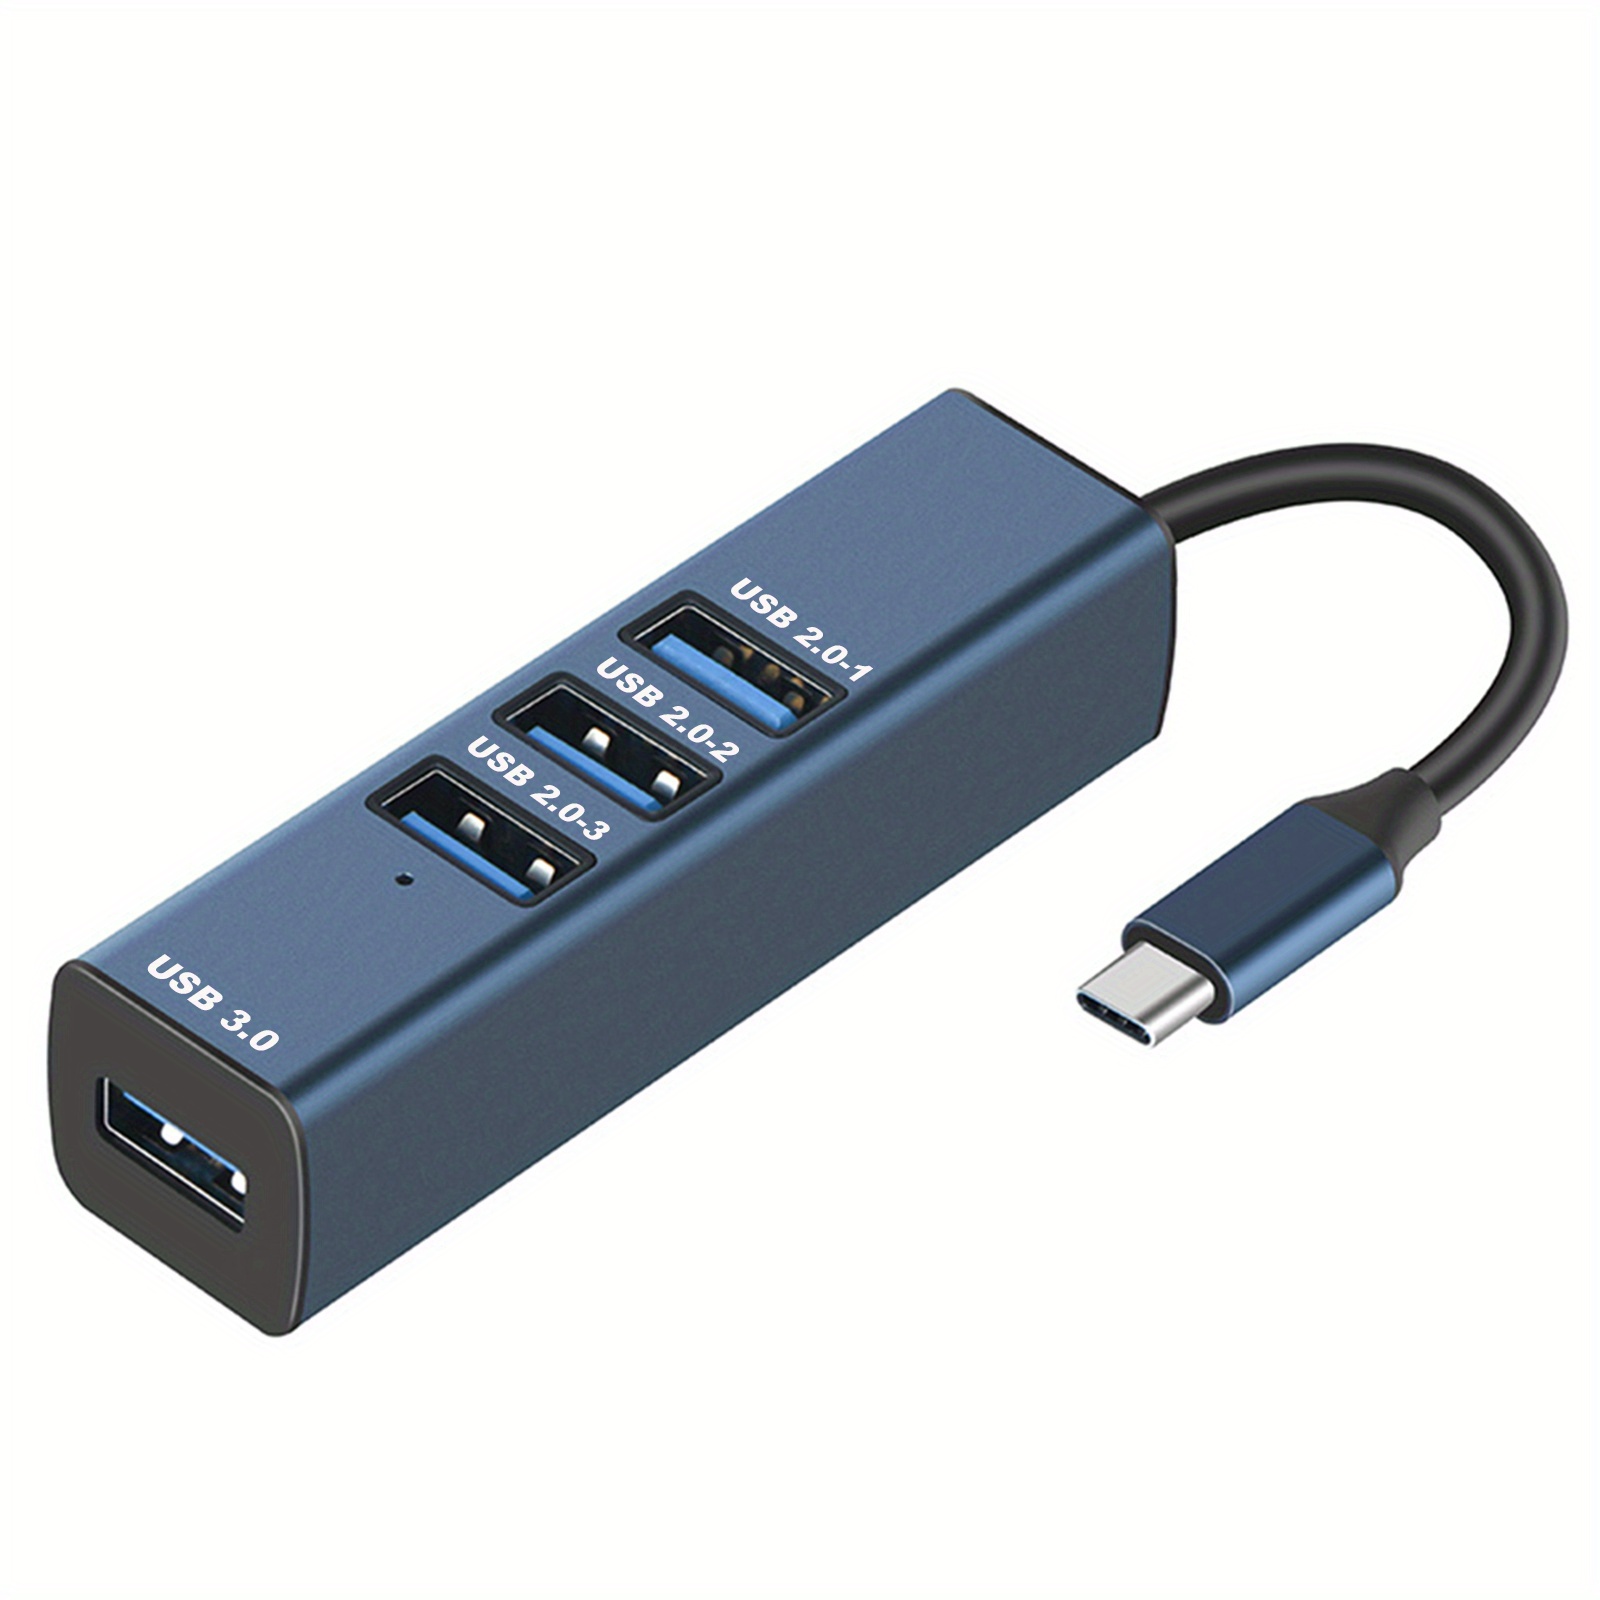 Adaptateur USB 3.0 vers Ethernet, concentrateur USB 3.0 à 3 ports